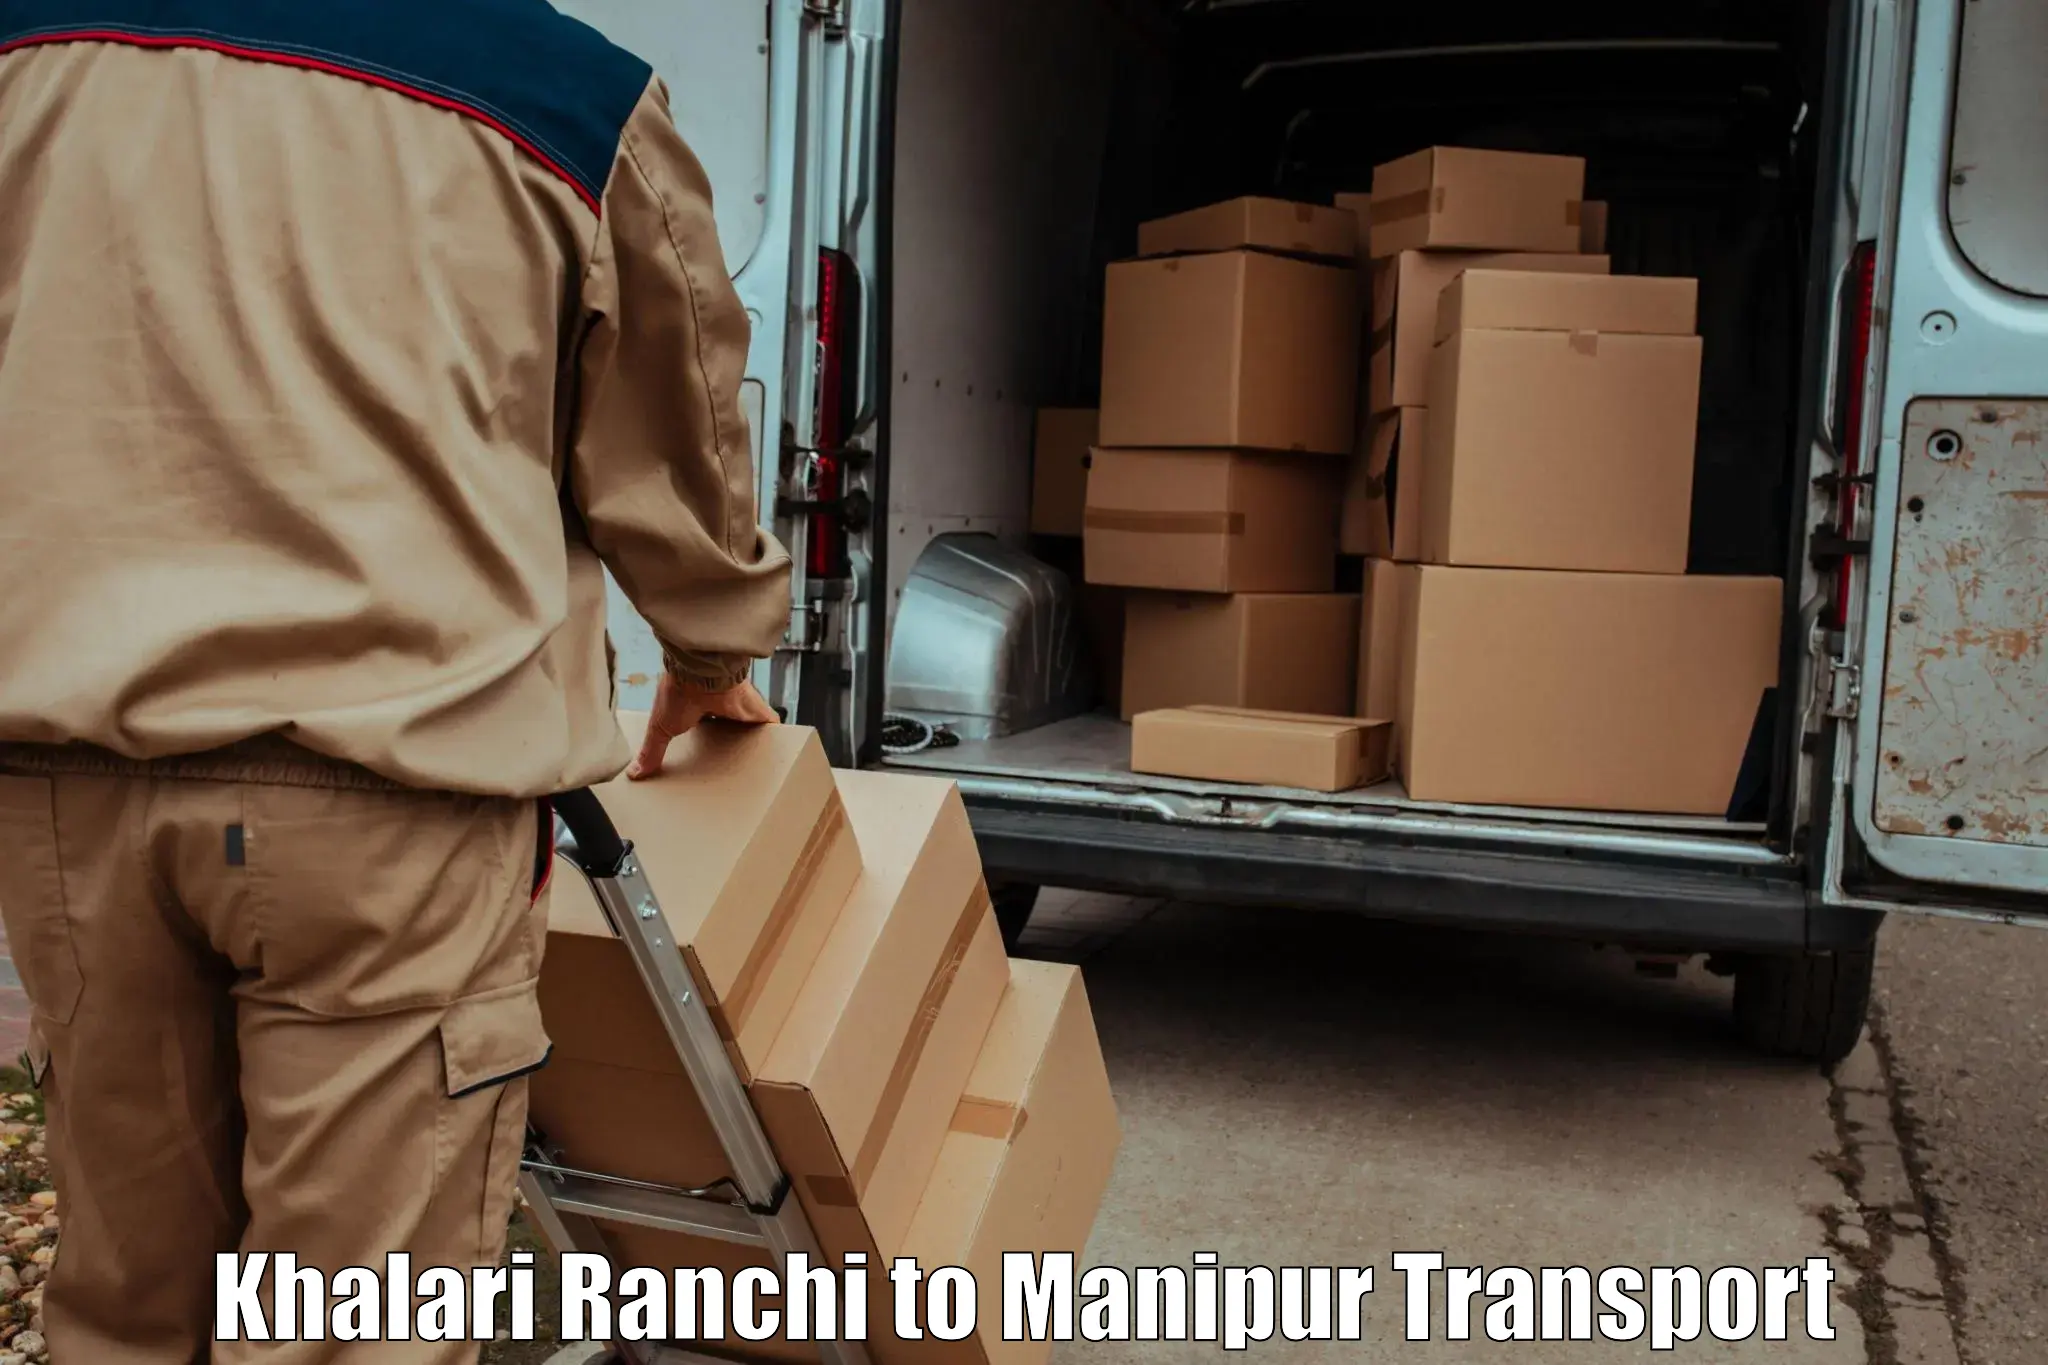 Land transport services in Khalari Ranchi to Kanti